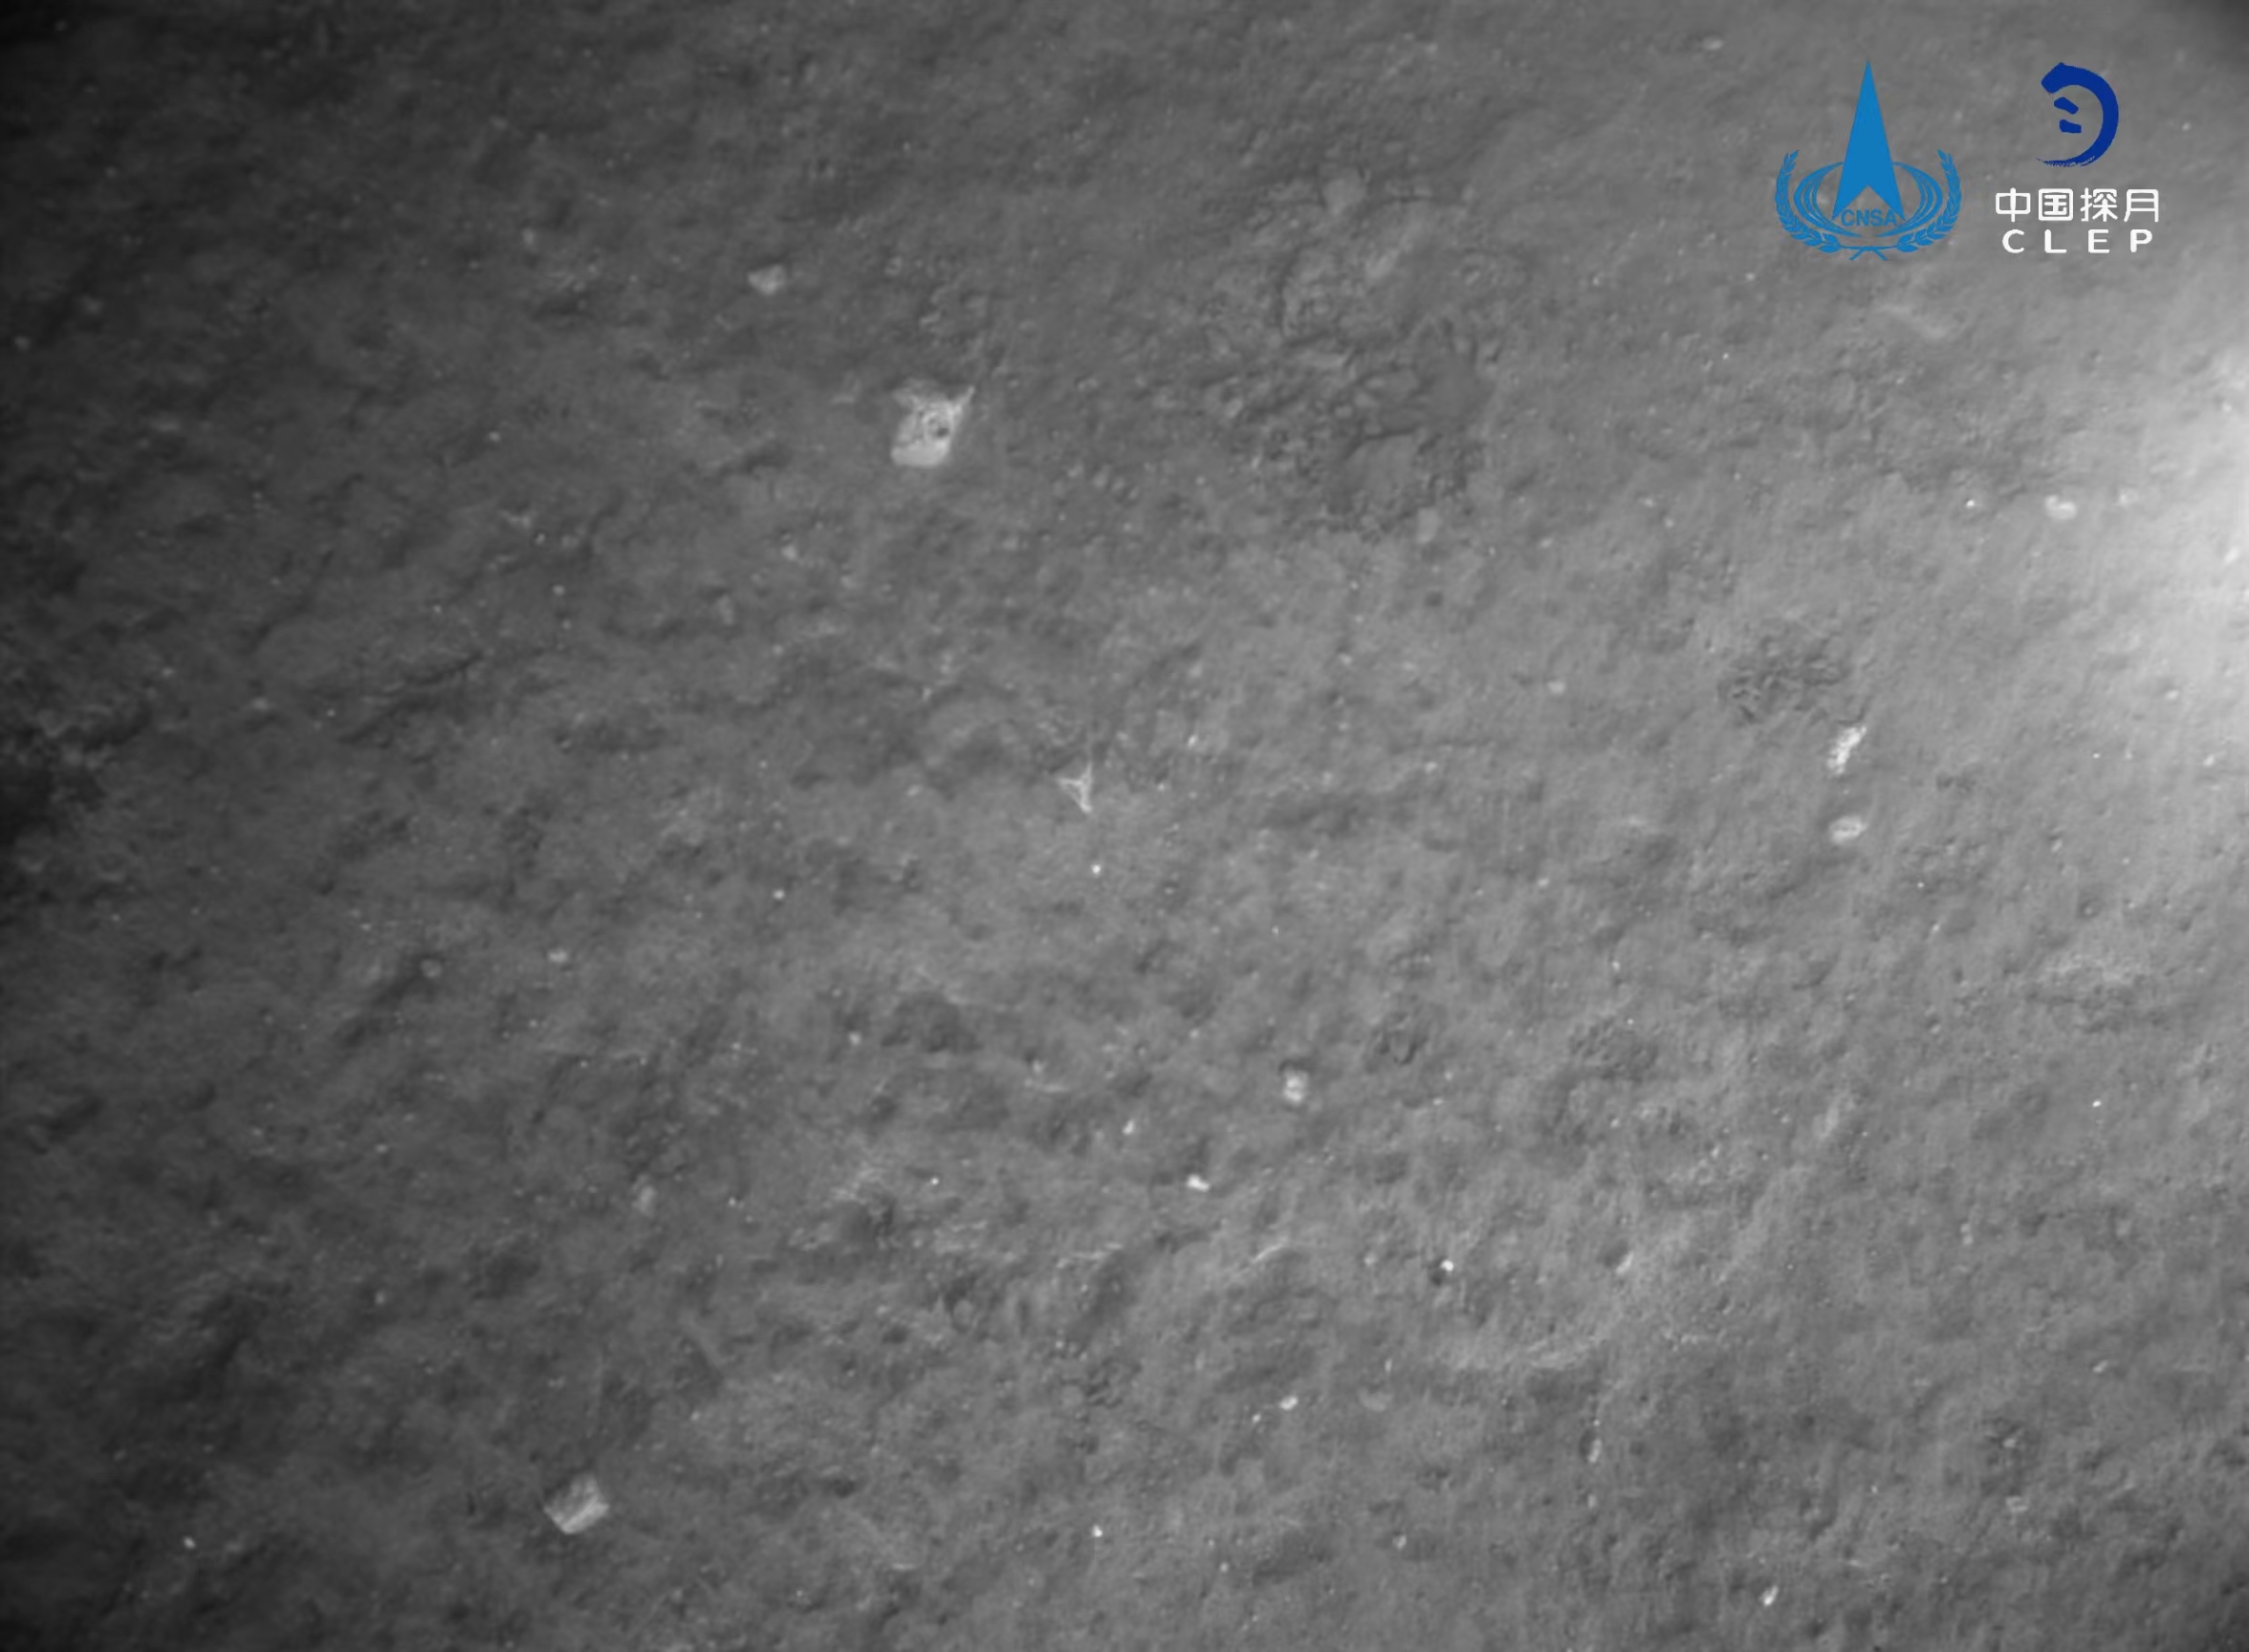 该图由降落相机在着陆器安全着陆后拍摄
	，嫦娥